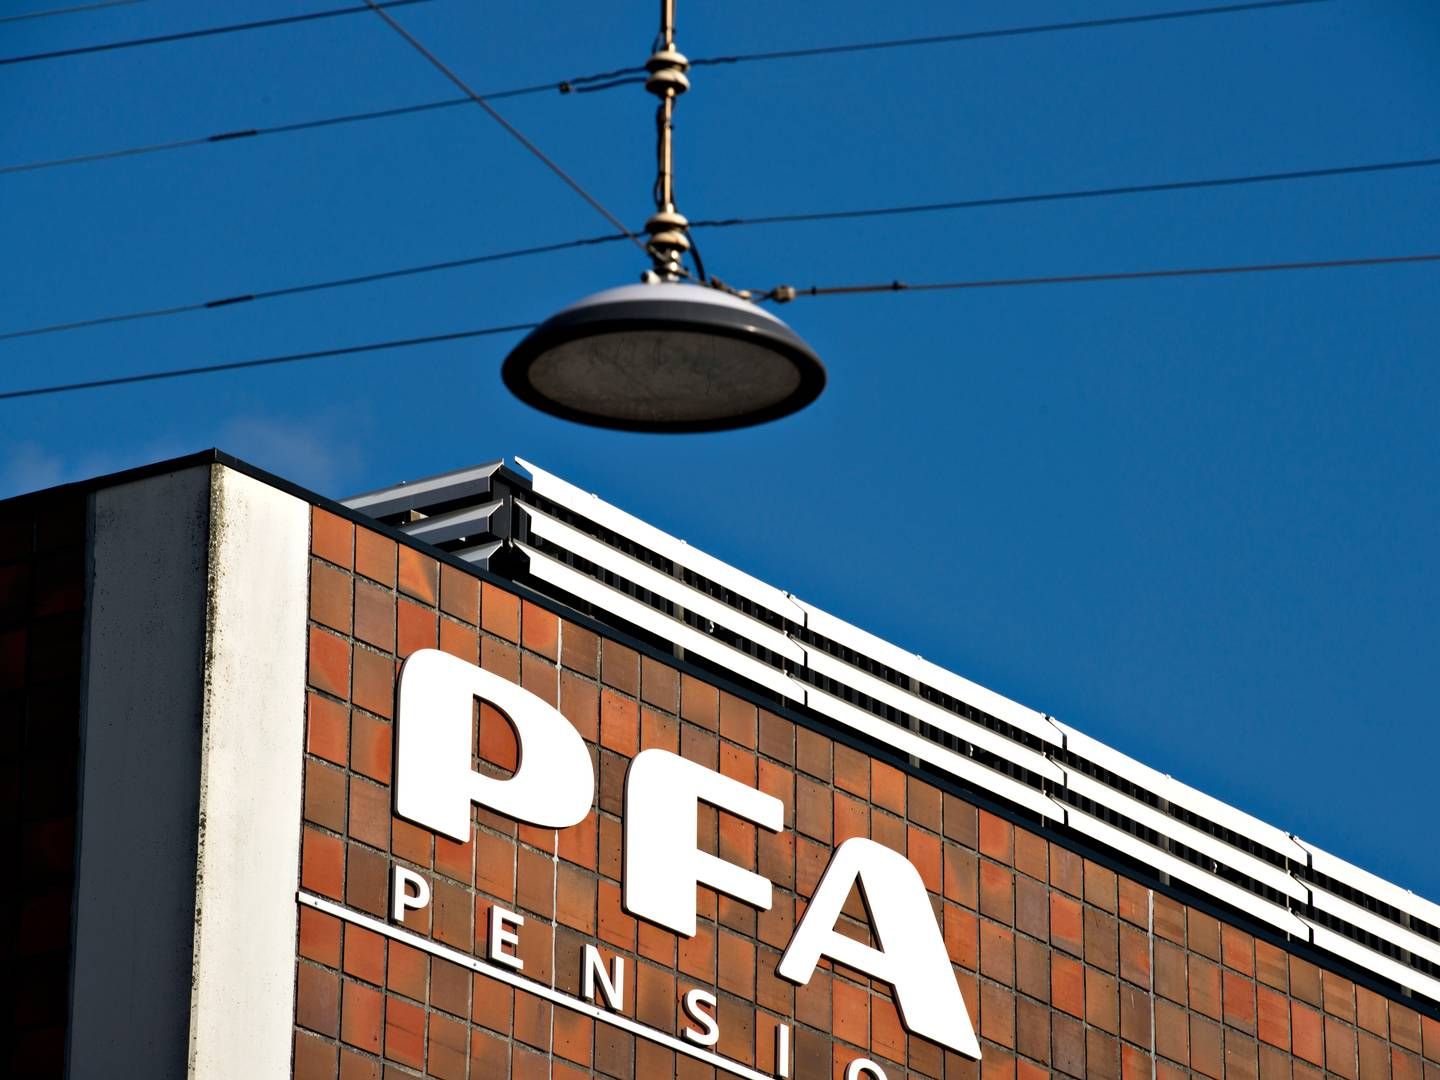 PFA og PKA har været medejere af Danmarks Skibskredit siden 2016, men det får nu en ende. | Foto: Lars Krabbe/Jyllands-Posten/Ritzau Scanpix